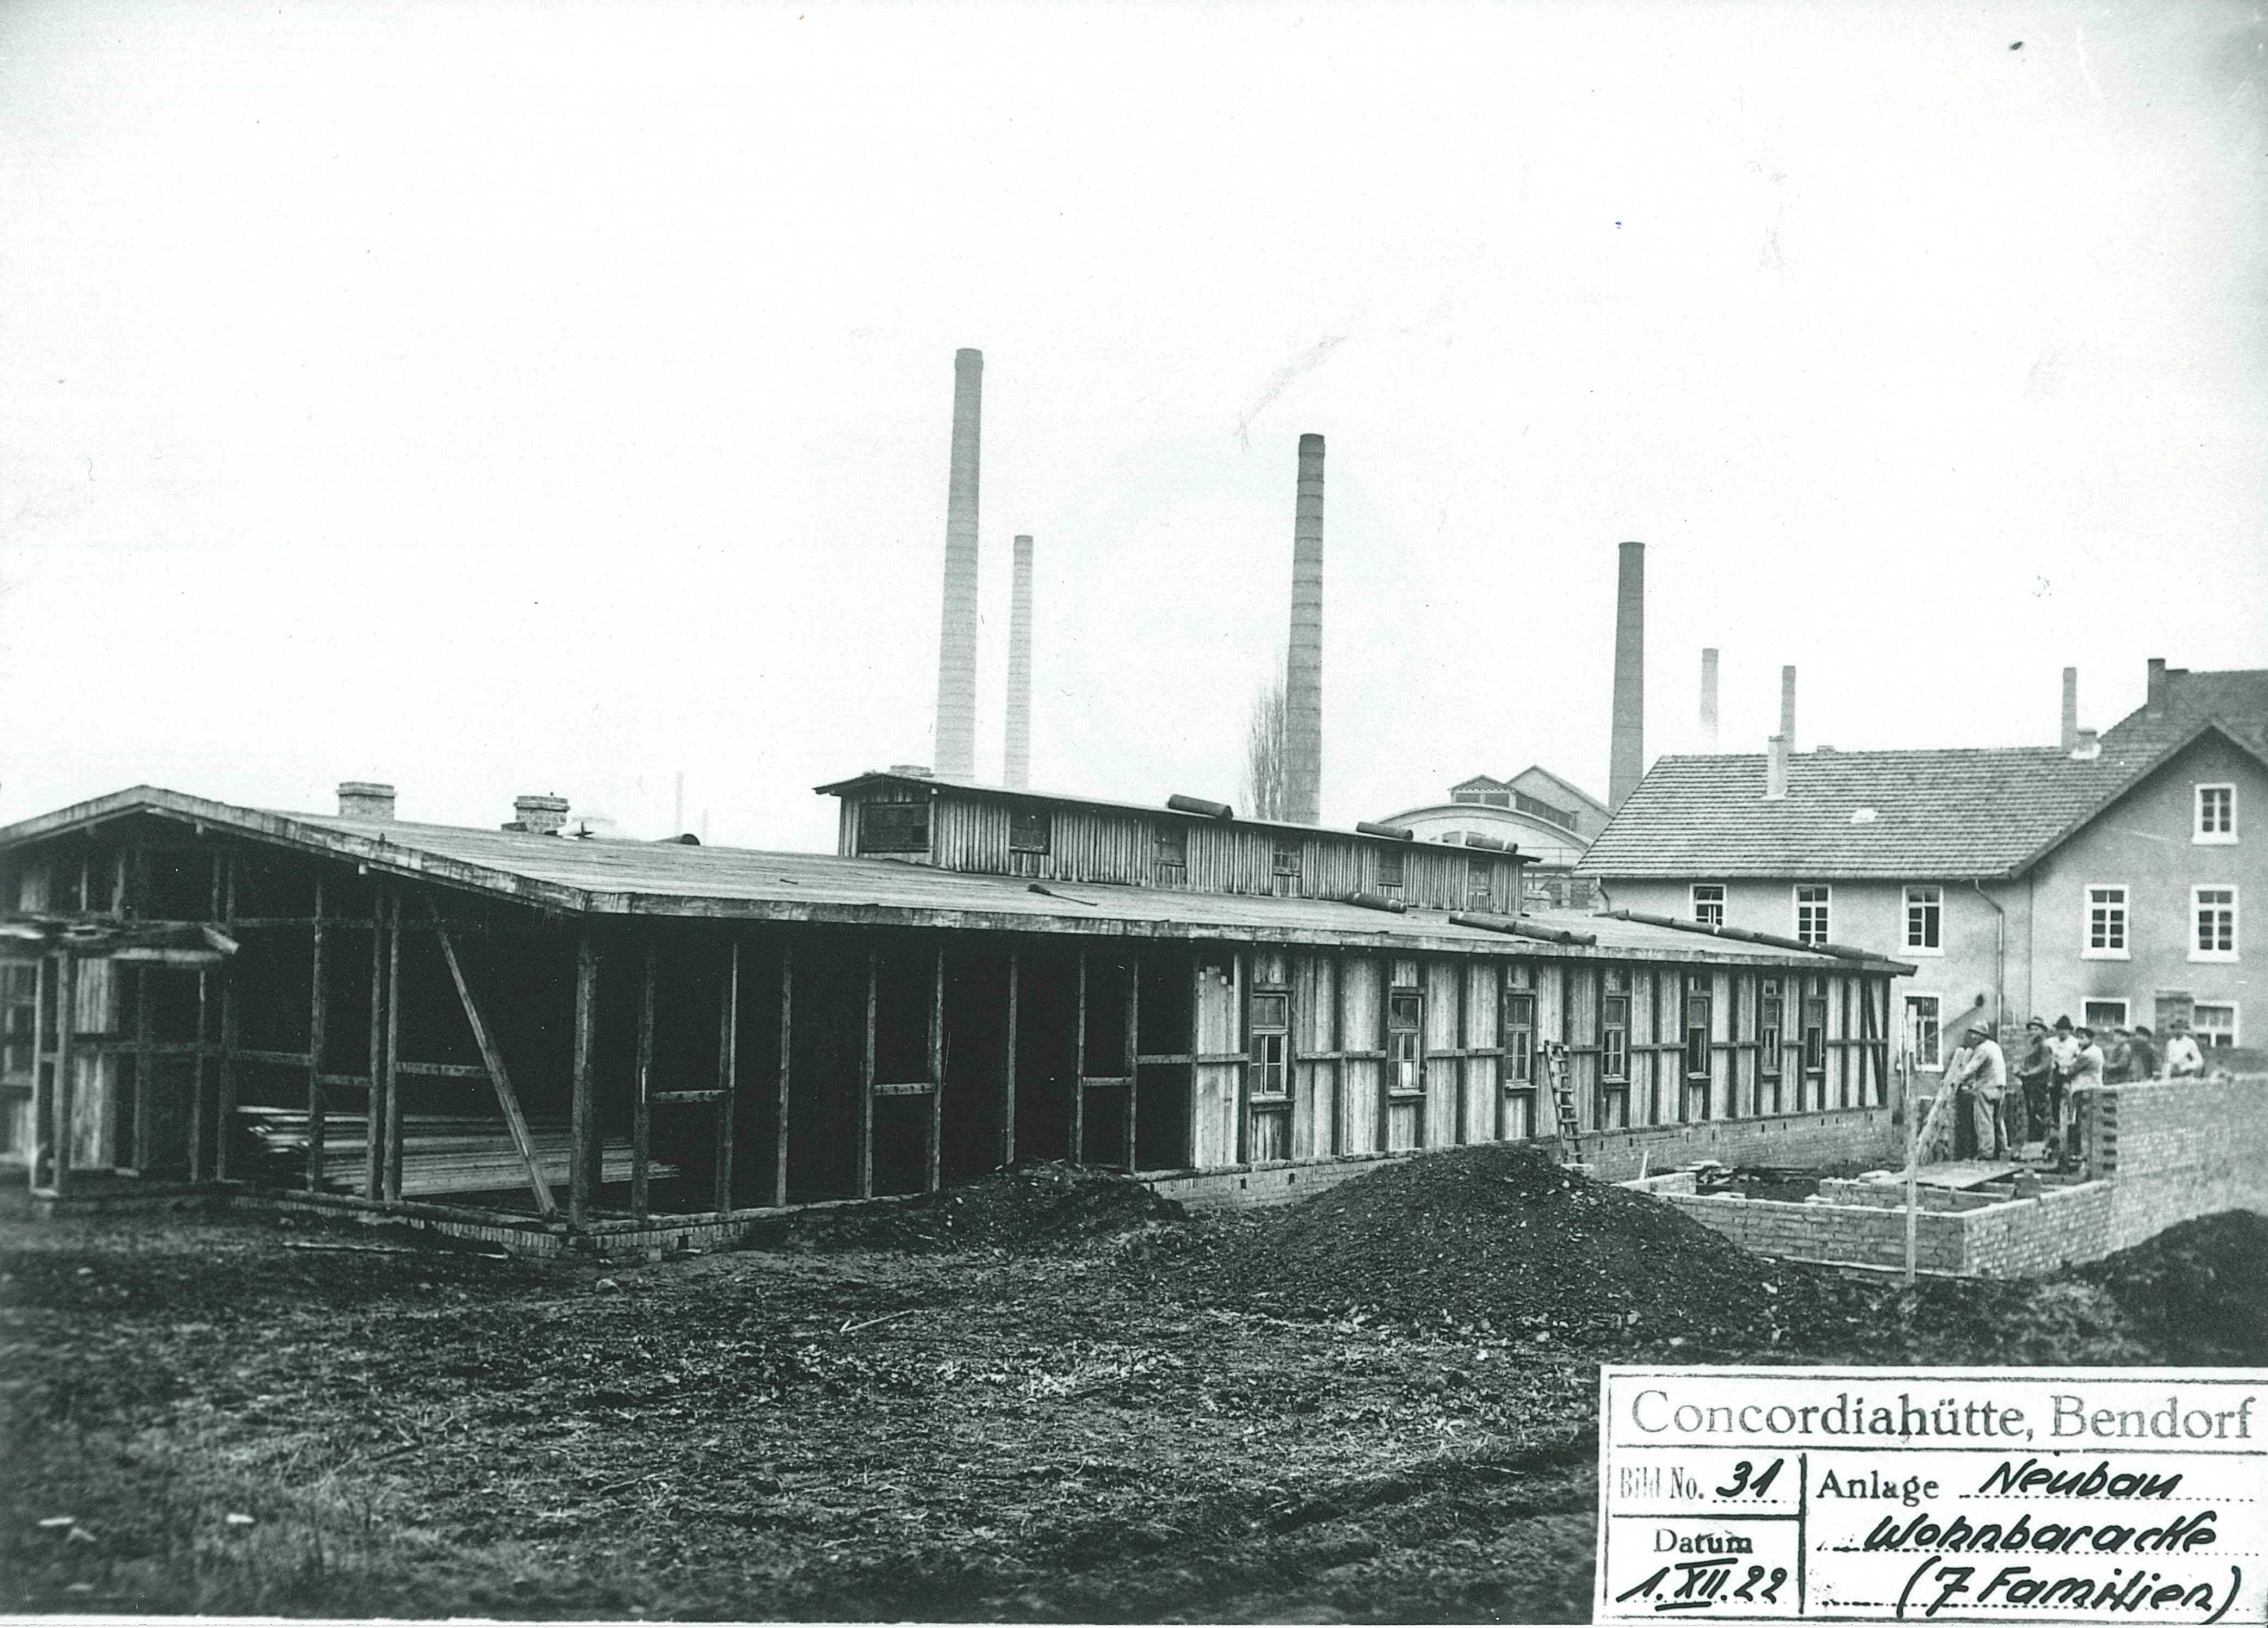 Neubau einer Wohnbaracke, Concordia-Hütte in Mülhofen, 1922 (Thyssen Konzernarchiv Duisburg CC BY-NC-SA)